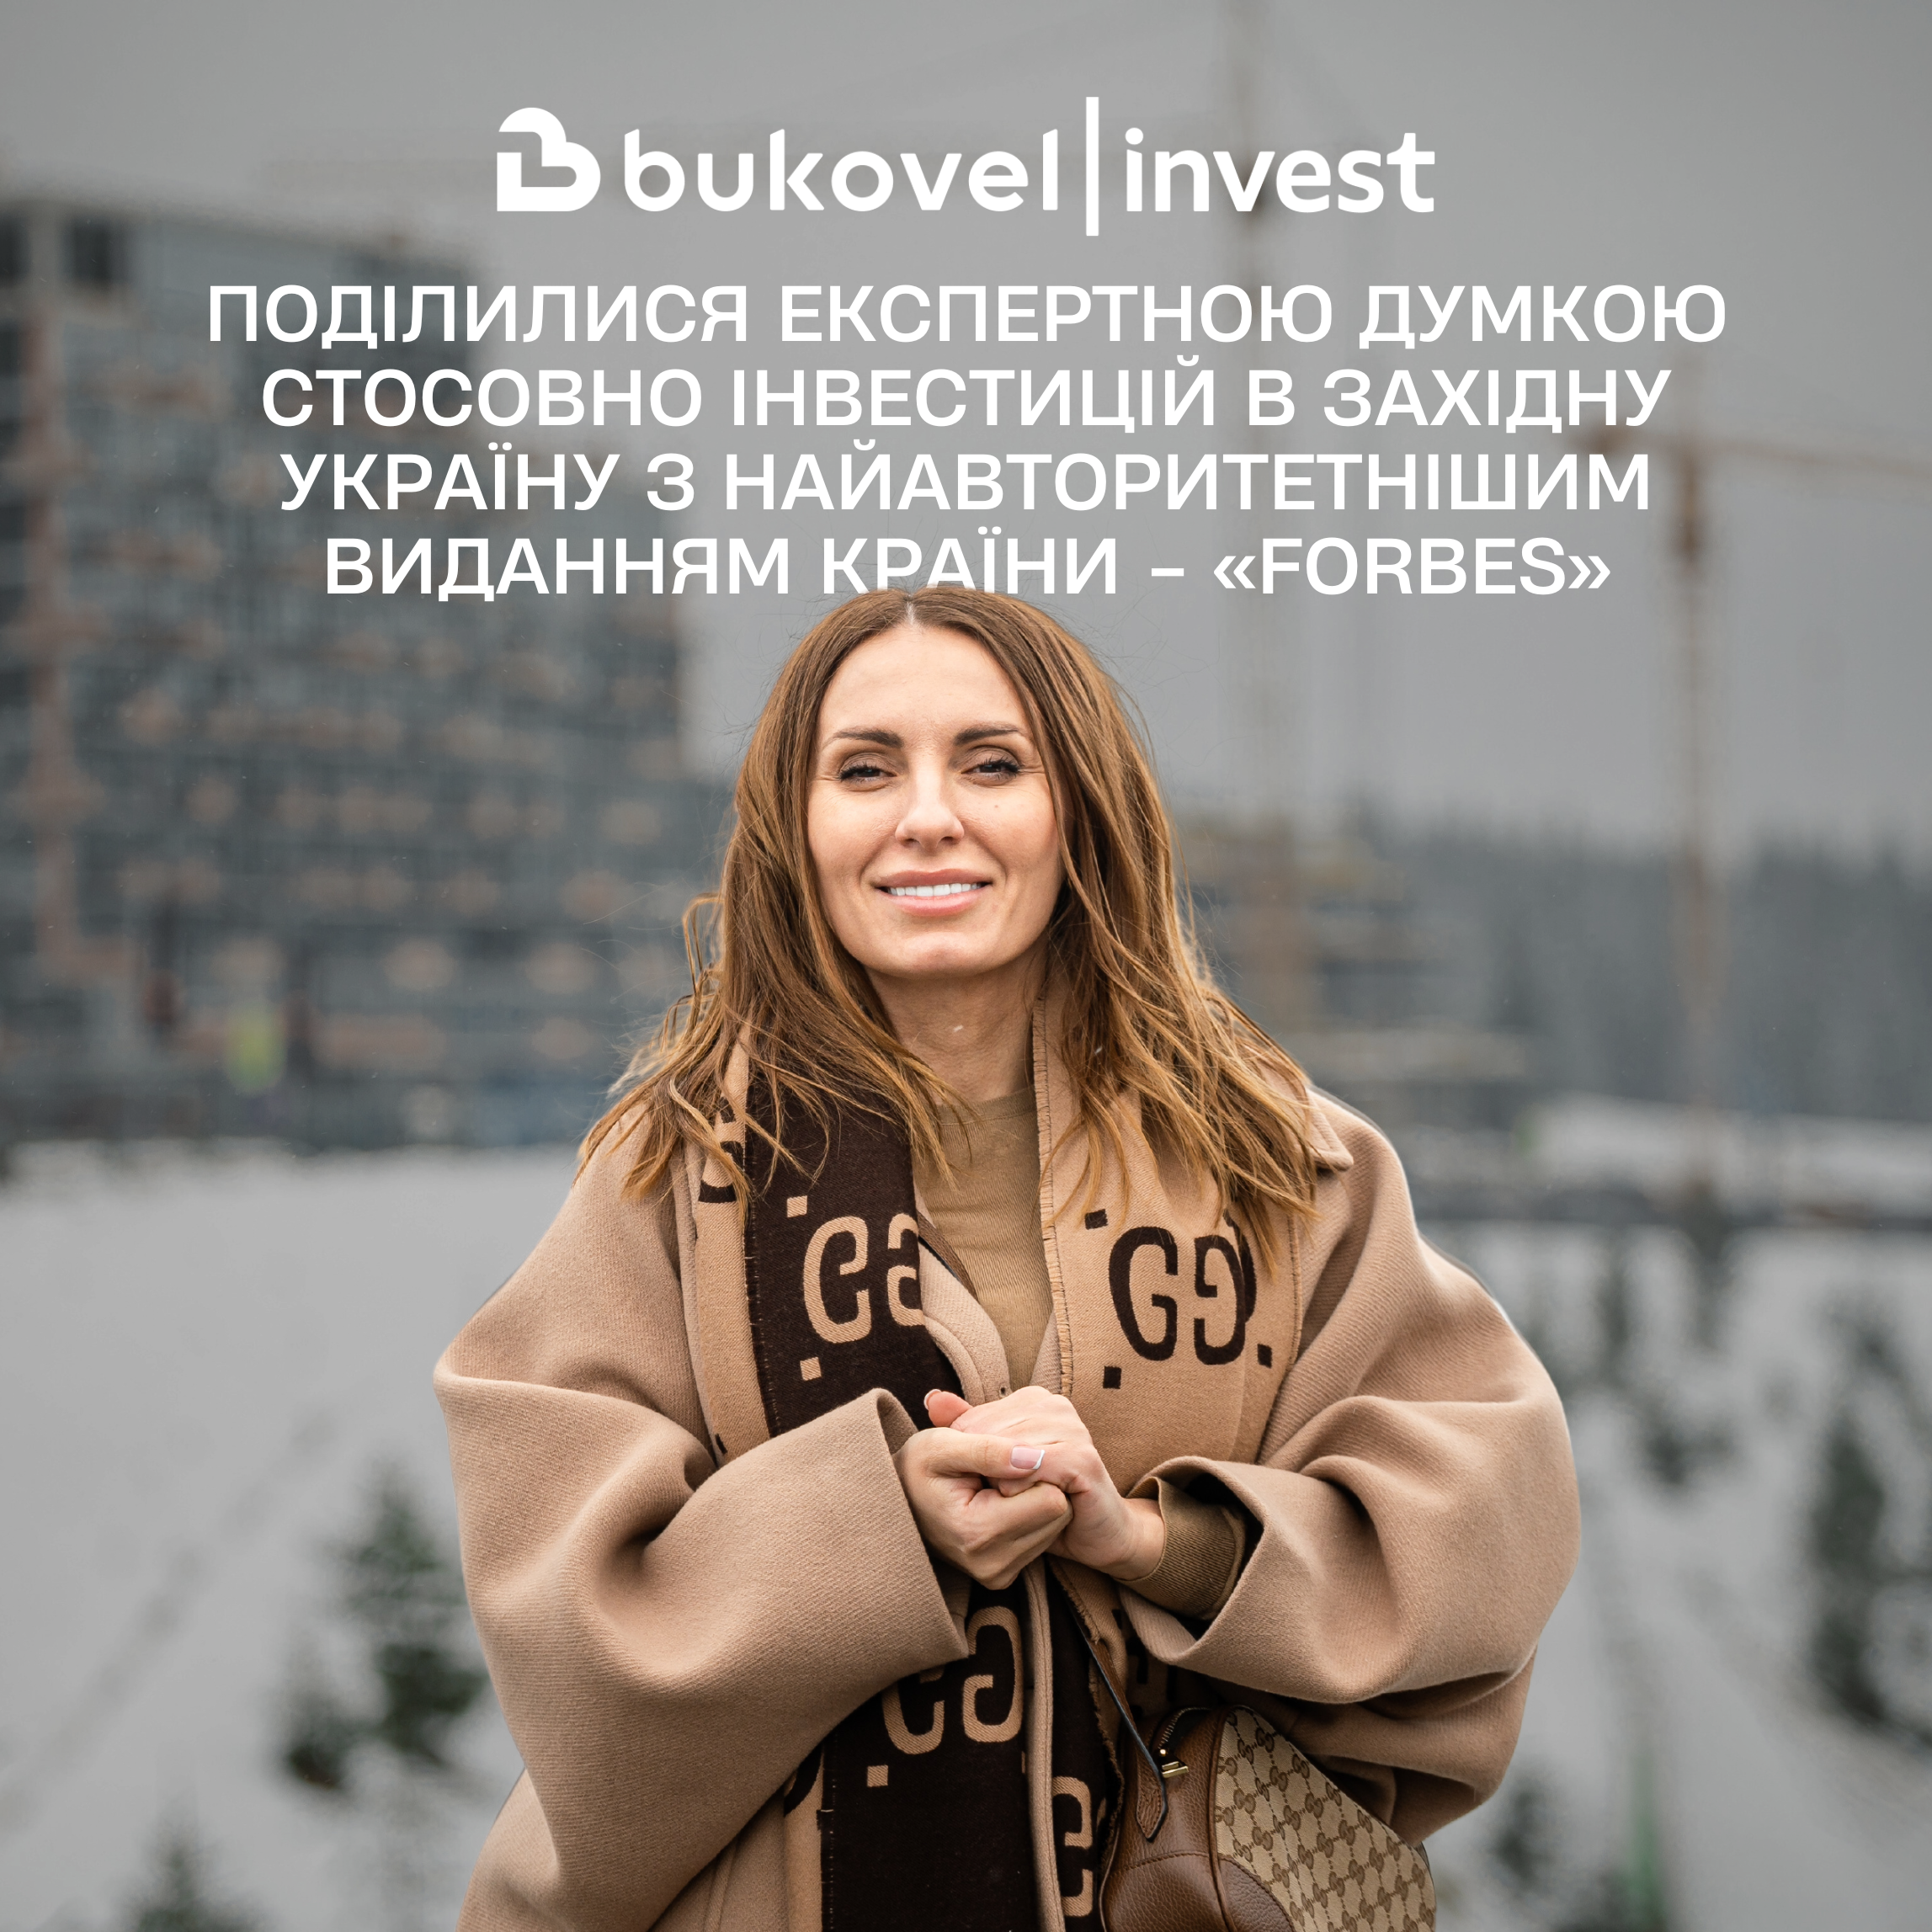 Поділилися експертною думкою стосовно інвестицій в Західну Україну з найавторитетнішим виданням України Forbes